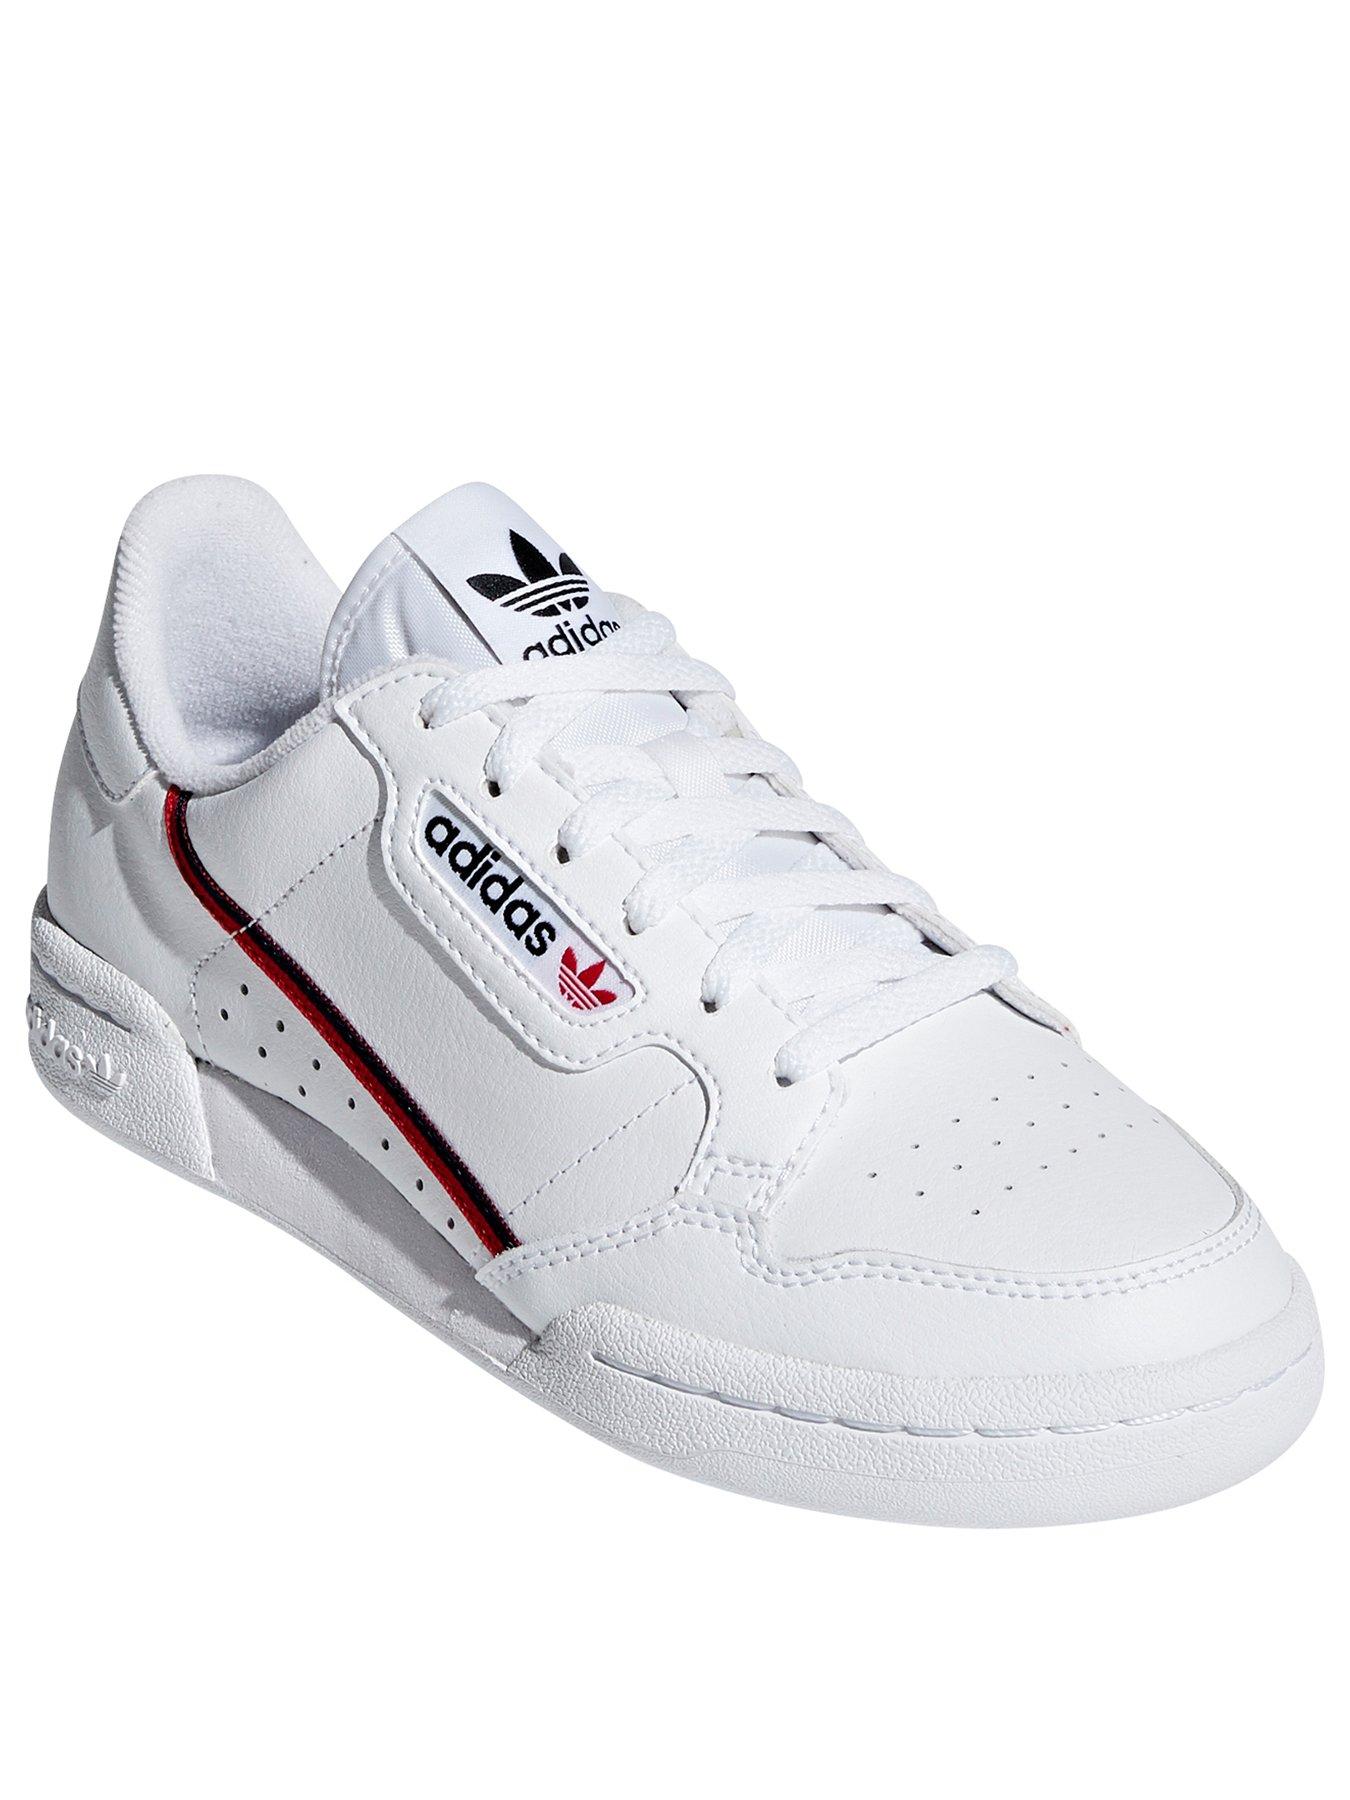 5.5 | Adidas | Junior footwear (sizes 3 